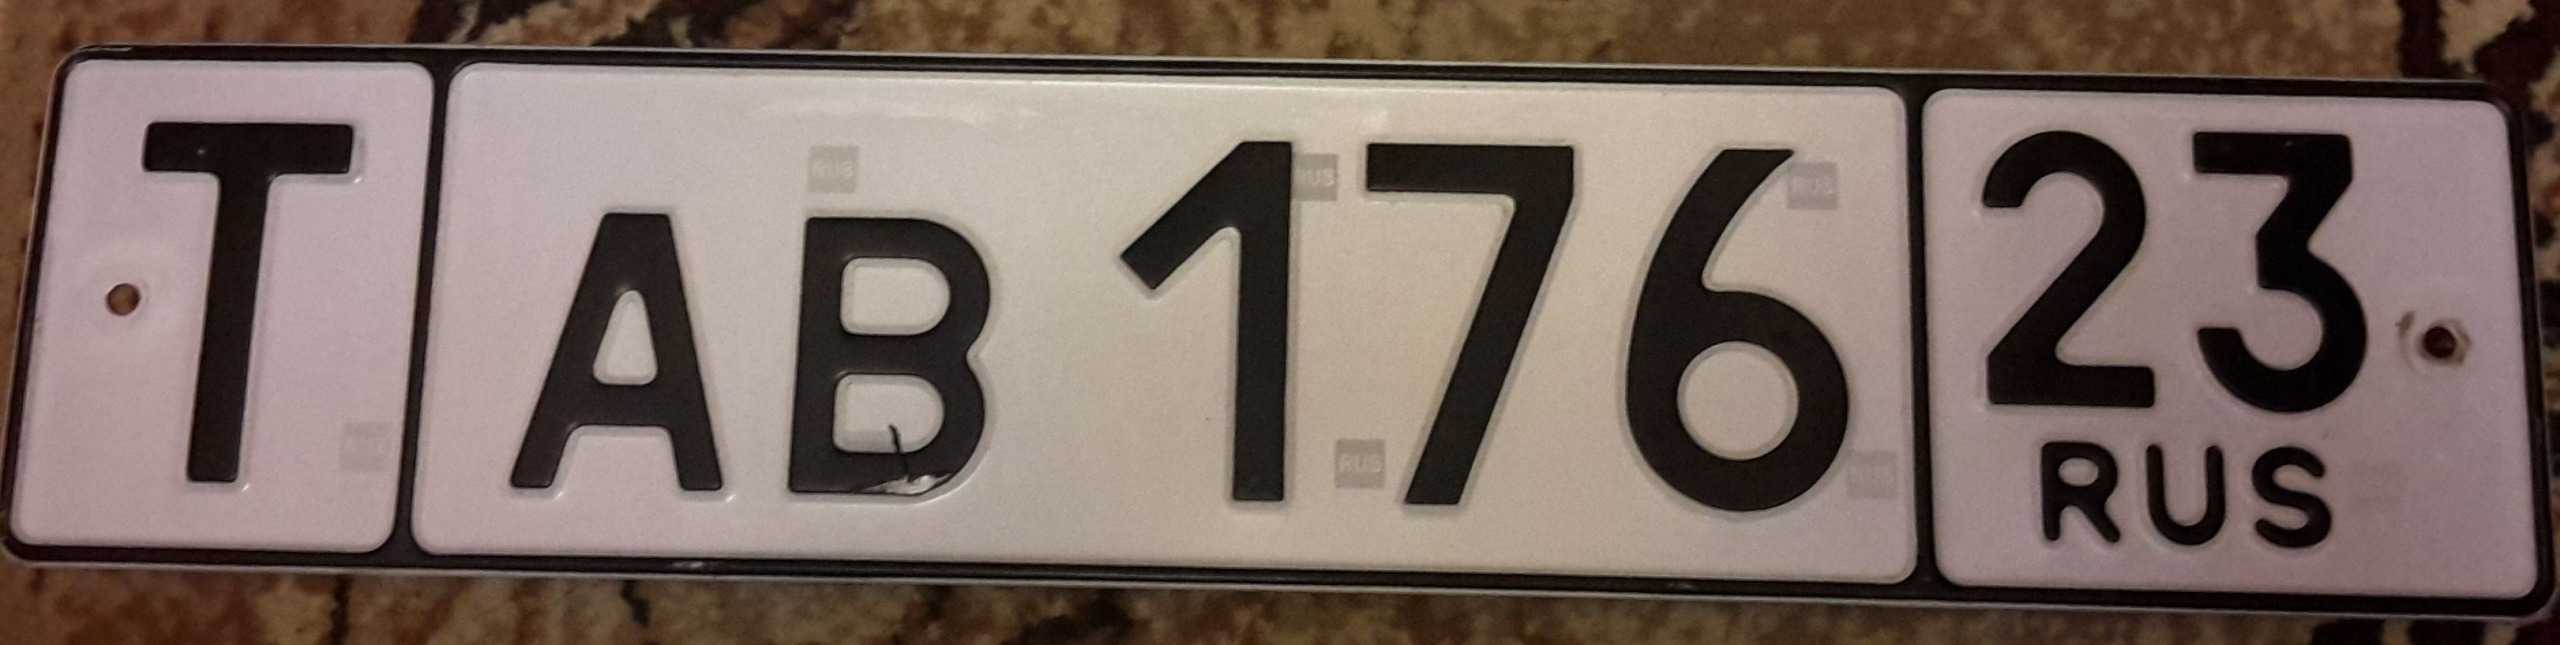 Автомобильные номера, которые используются в грузии